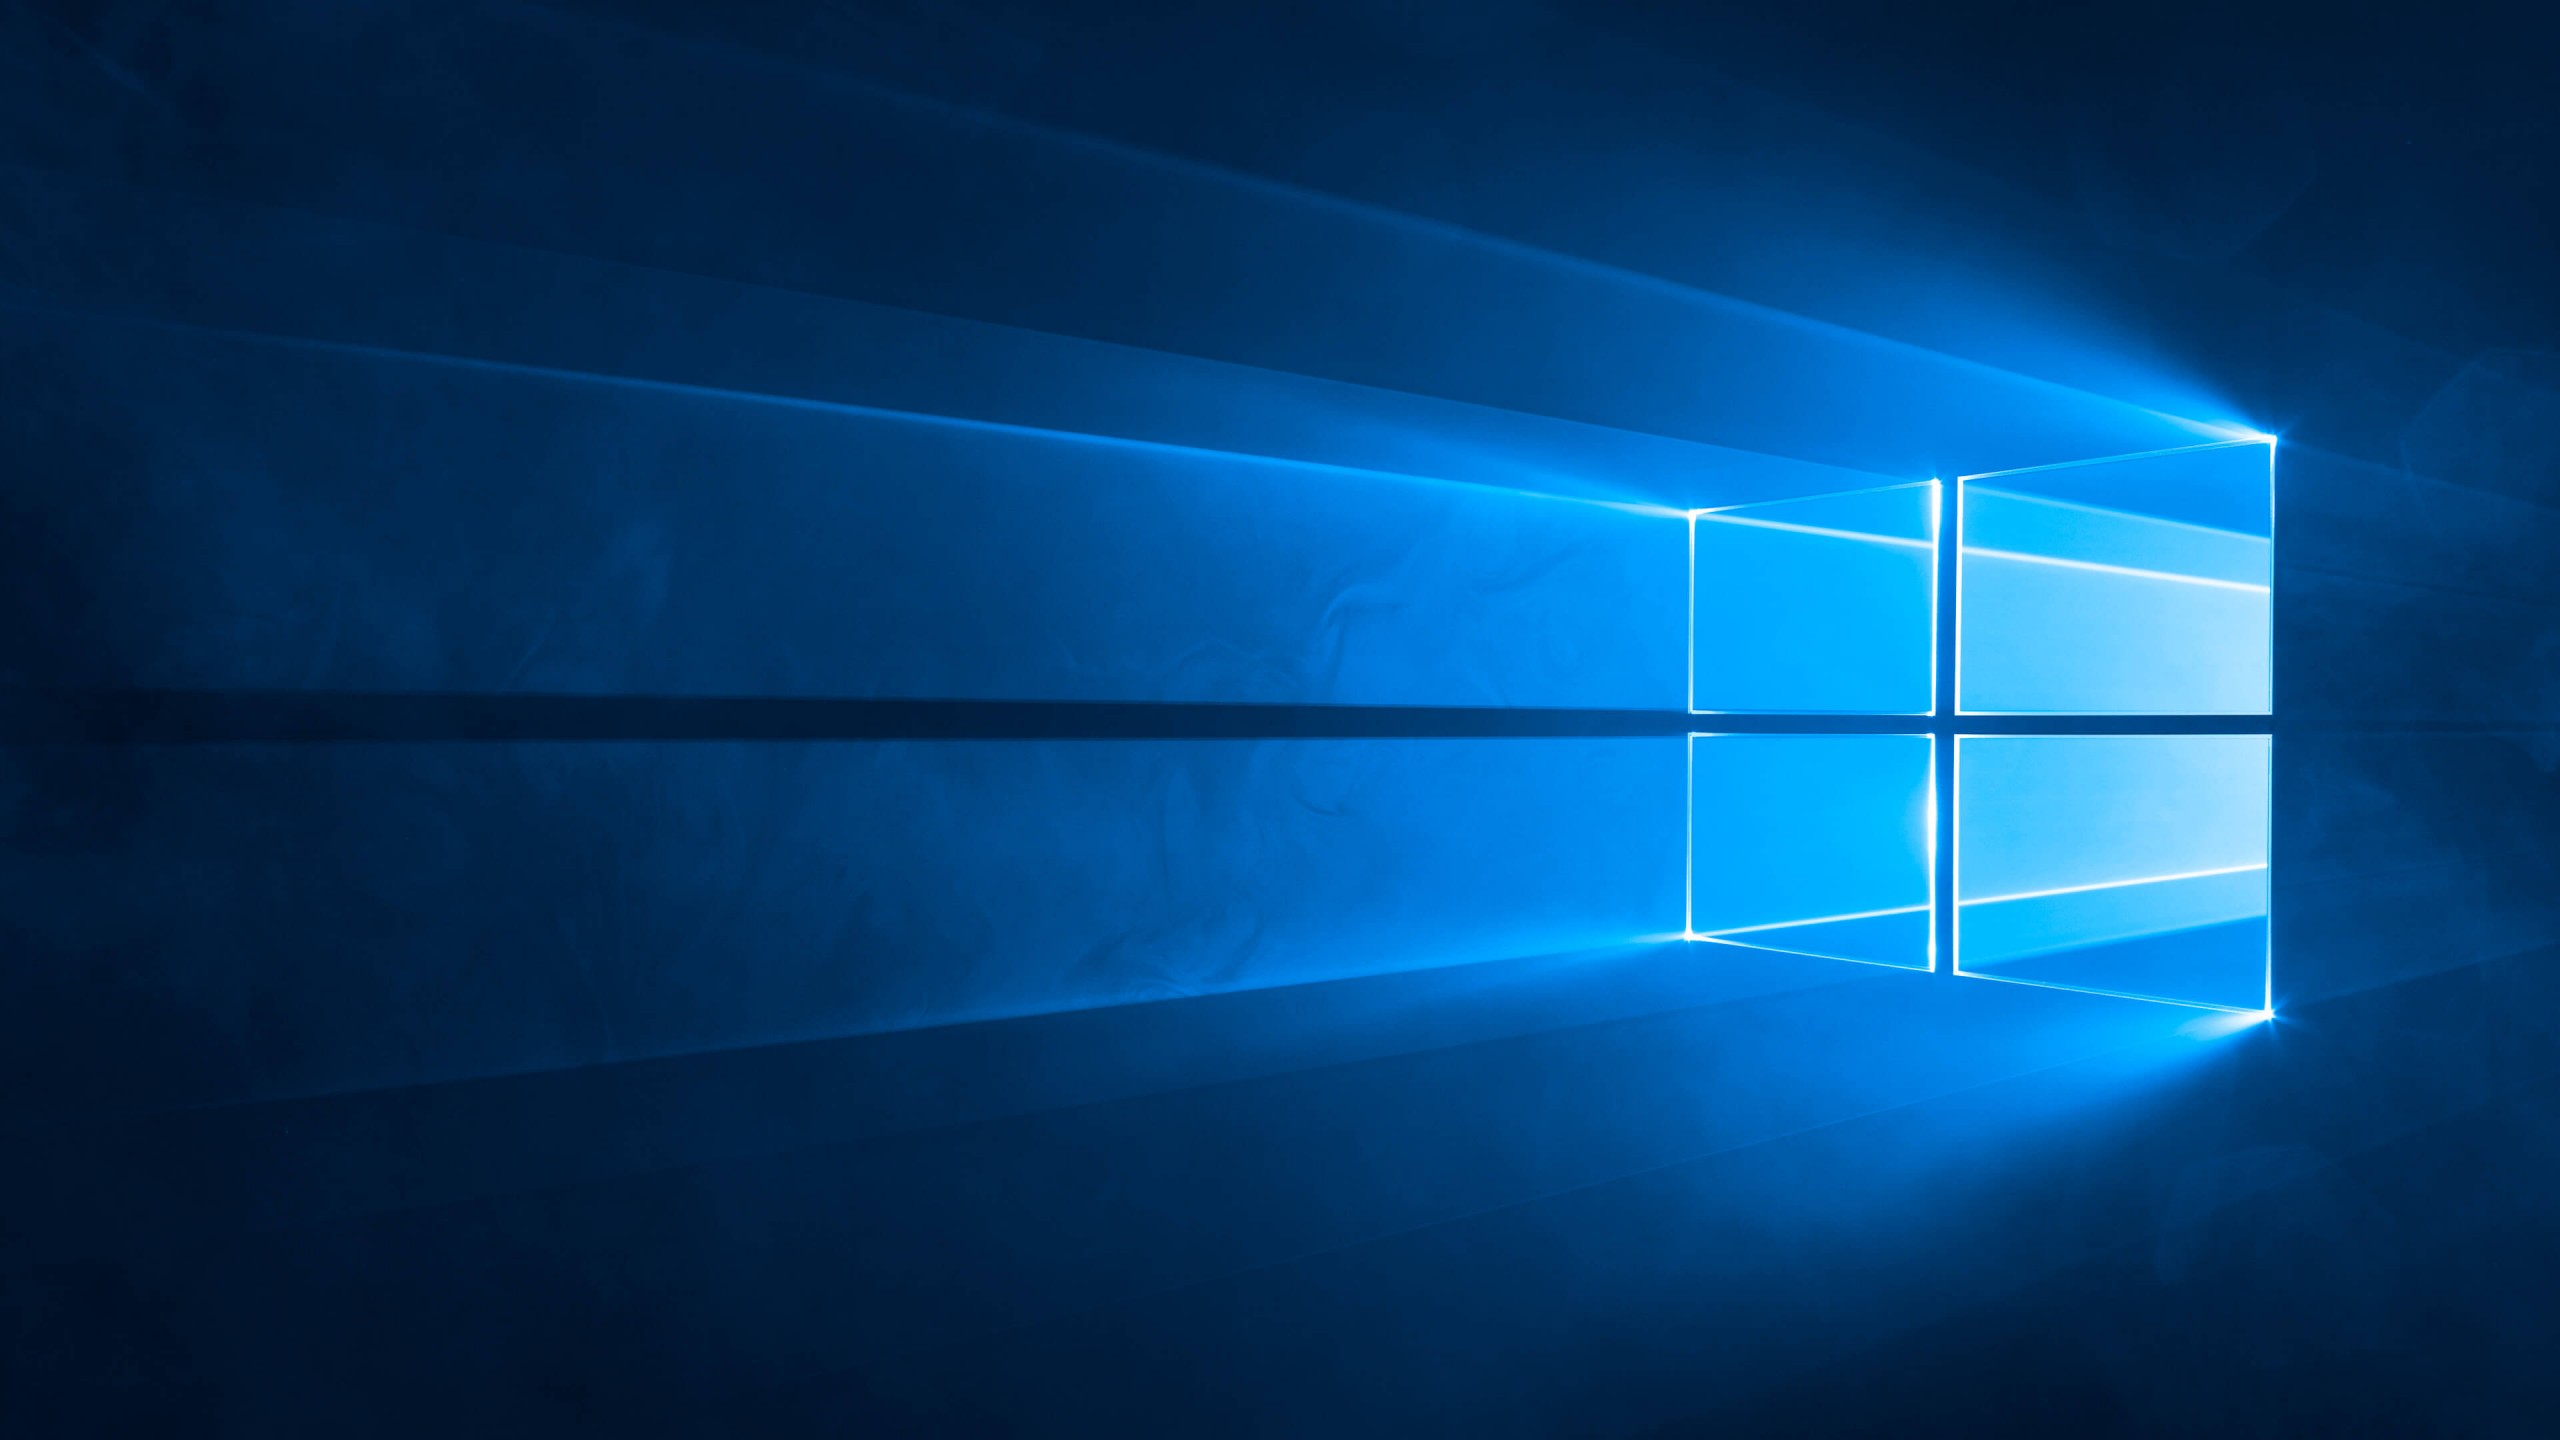 Windows 10 Official HD wallpaper for 2560 x 1440   HDwallpapersnet